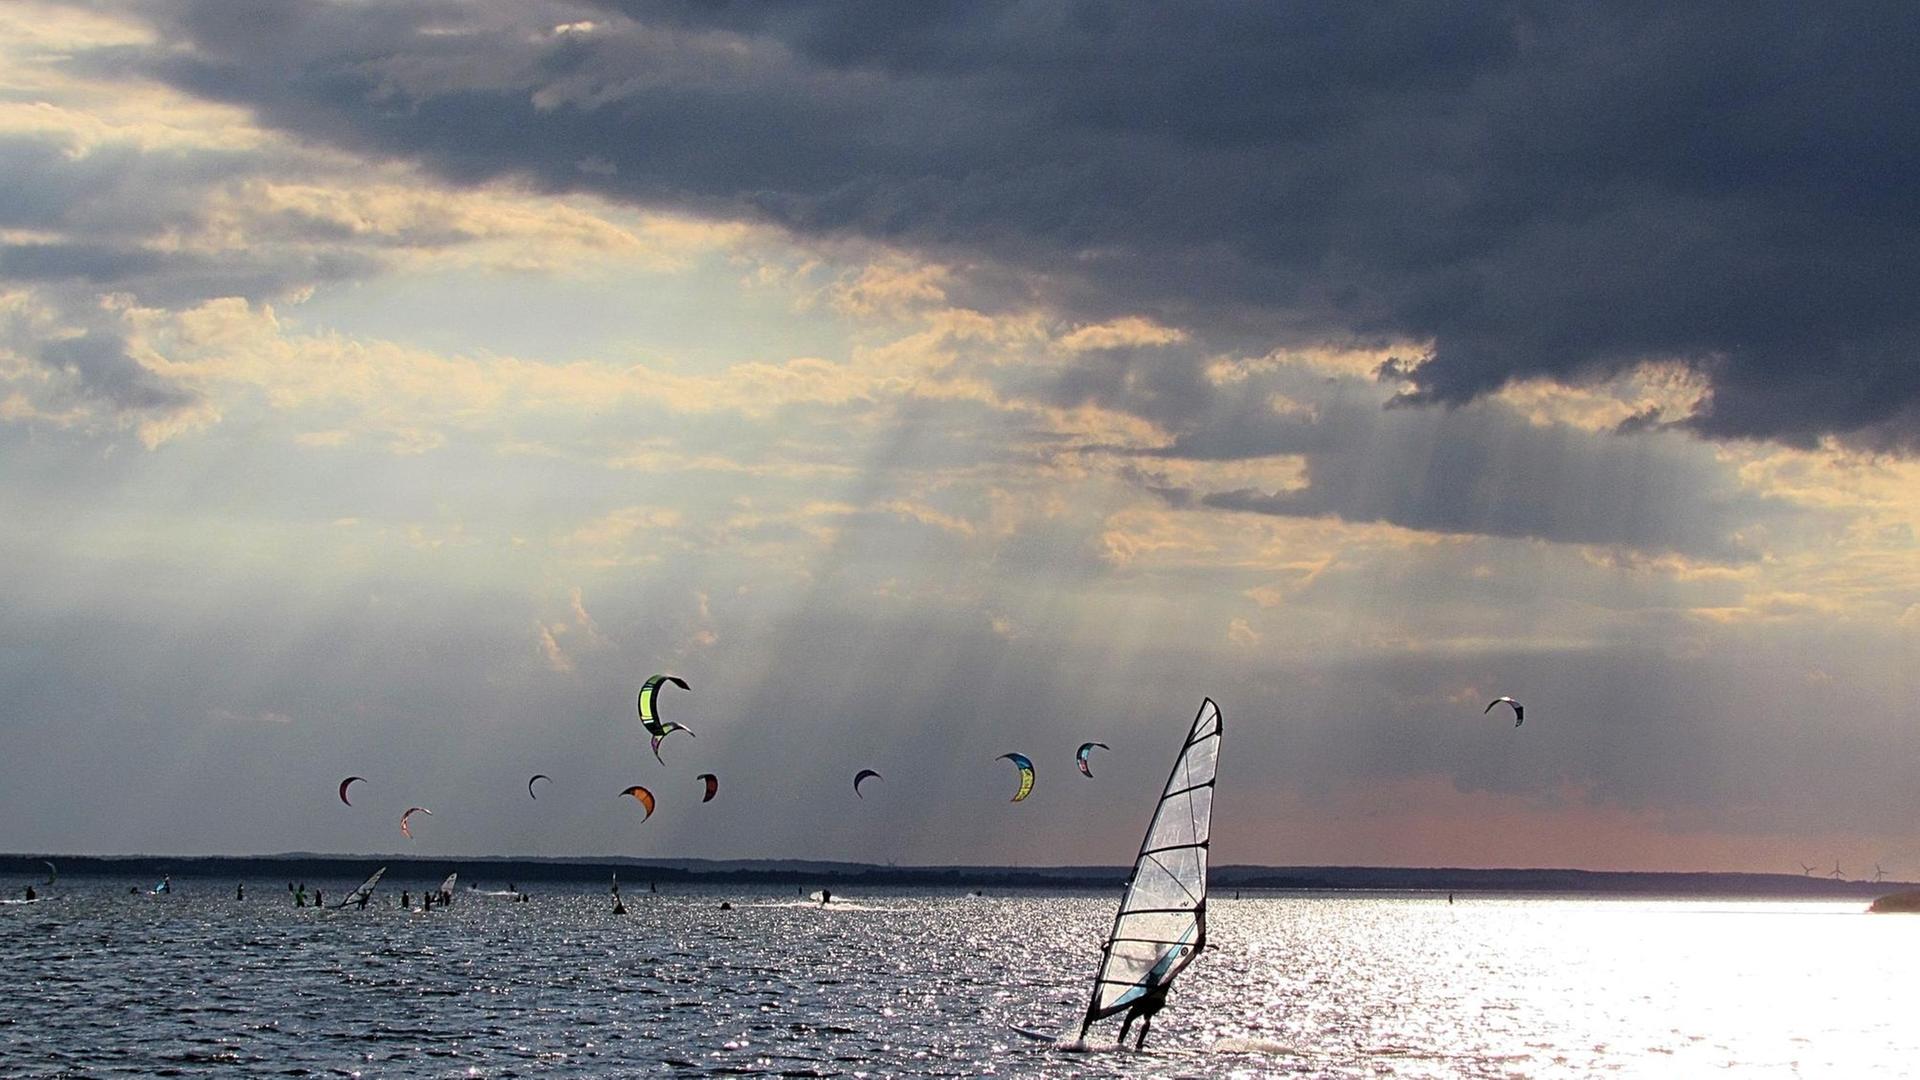 Mehrere Kitesurfer auf dem Meer, bei dramatischem Sonnenlicht.